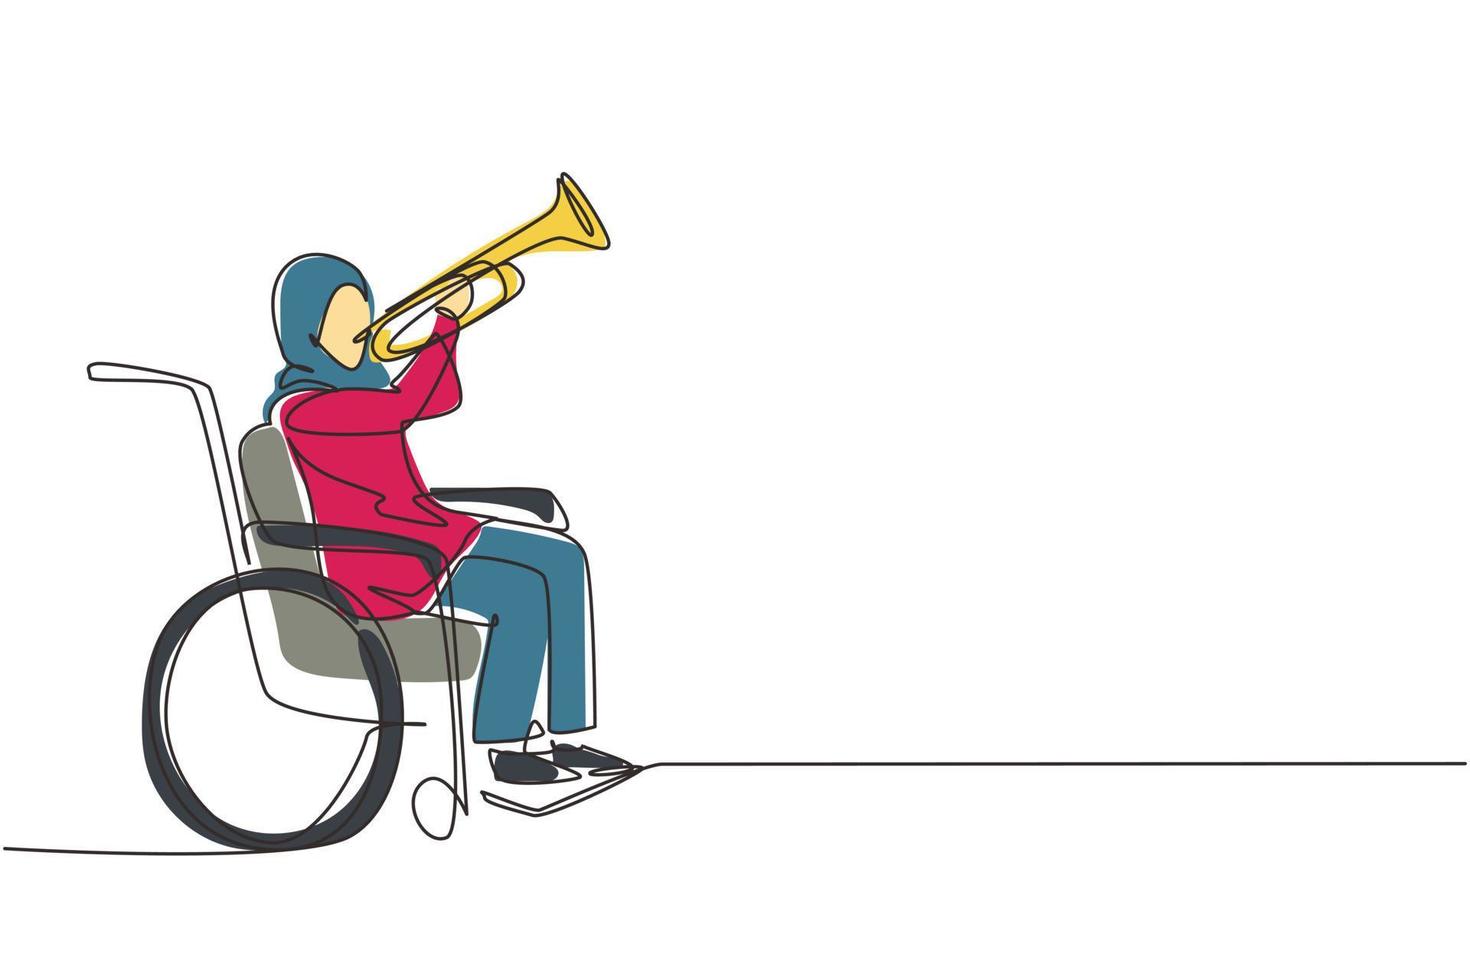 enda kontinuerlig linjeteckning arabisk kvinna i rullstol spelar trumpet under musiklektion. fysiskt handikappad. person på sjukhus. patient på rehabiliteringscenter. en linje rita design vektor